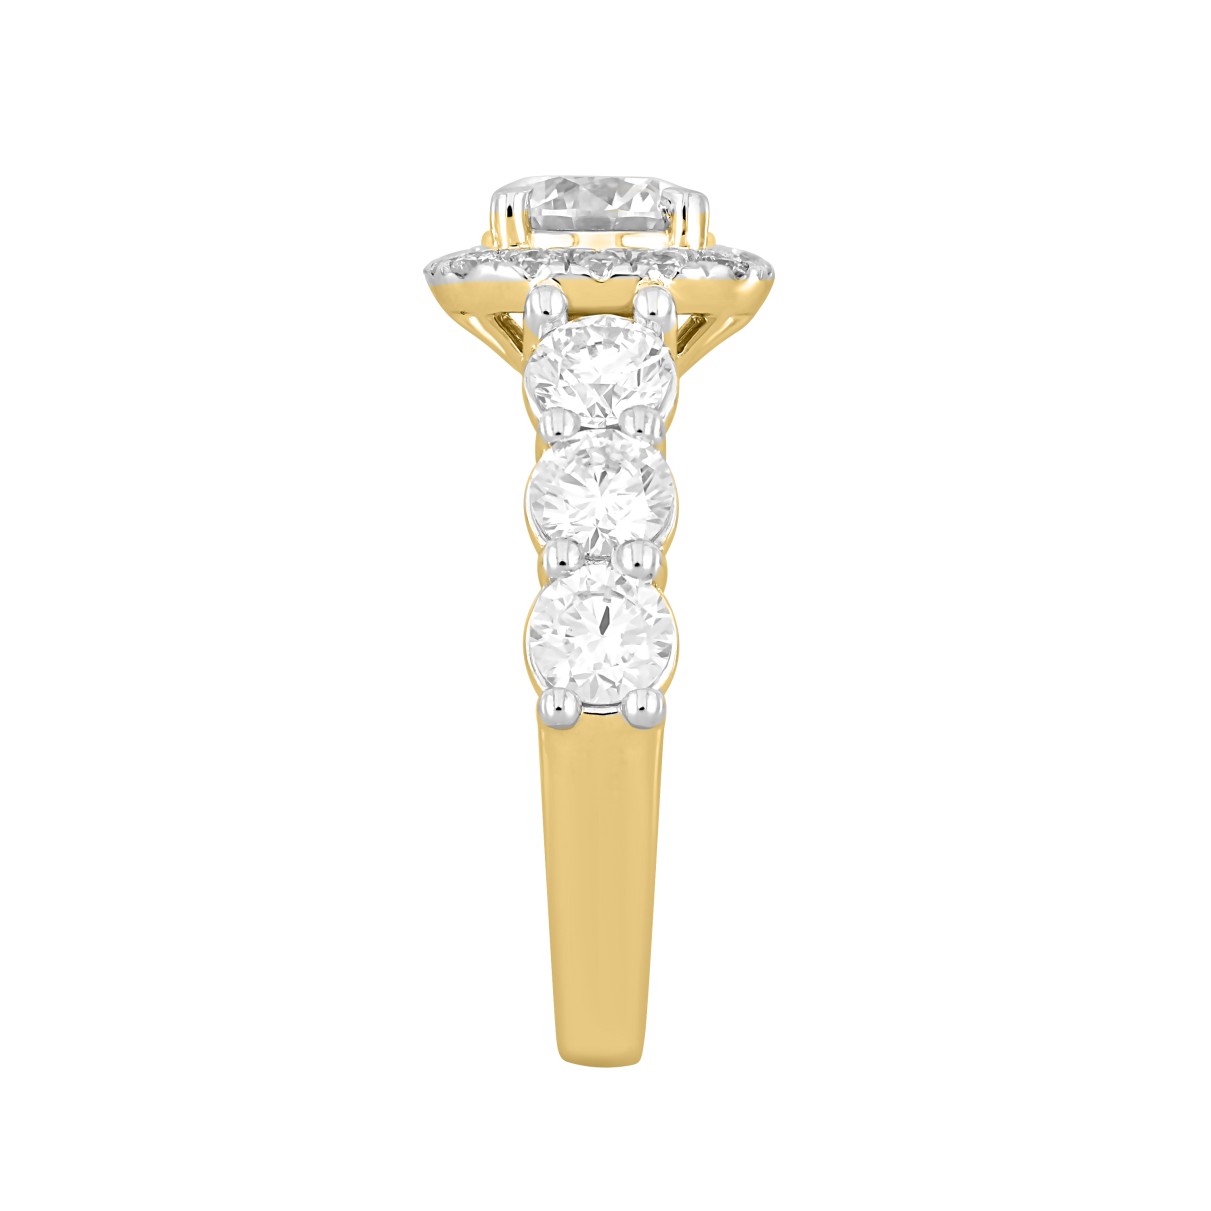 LADIES RING 2 3/4CT ROUND DIAMOND 14K YELLOW GOLD (CENTER STONE ROUND DIAMOND 1CT )